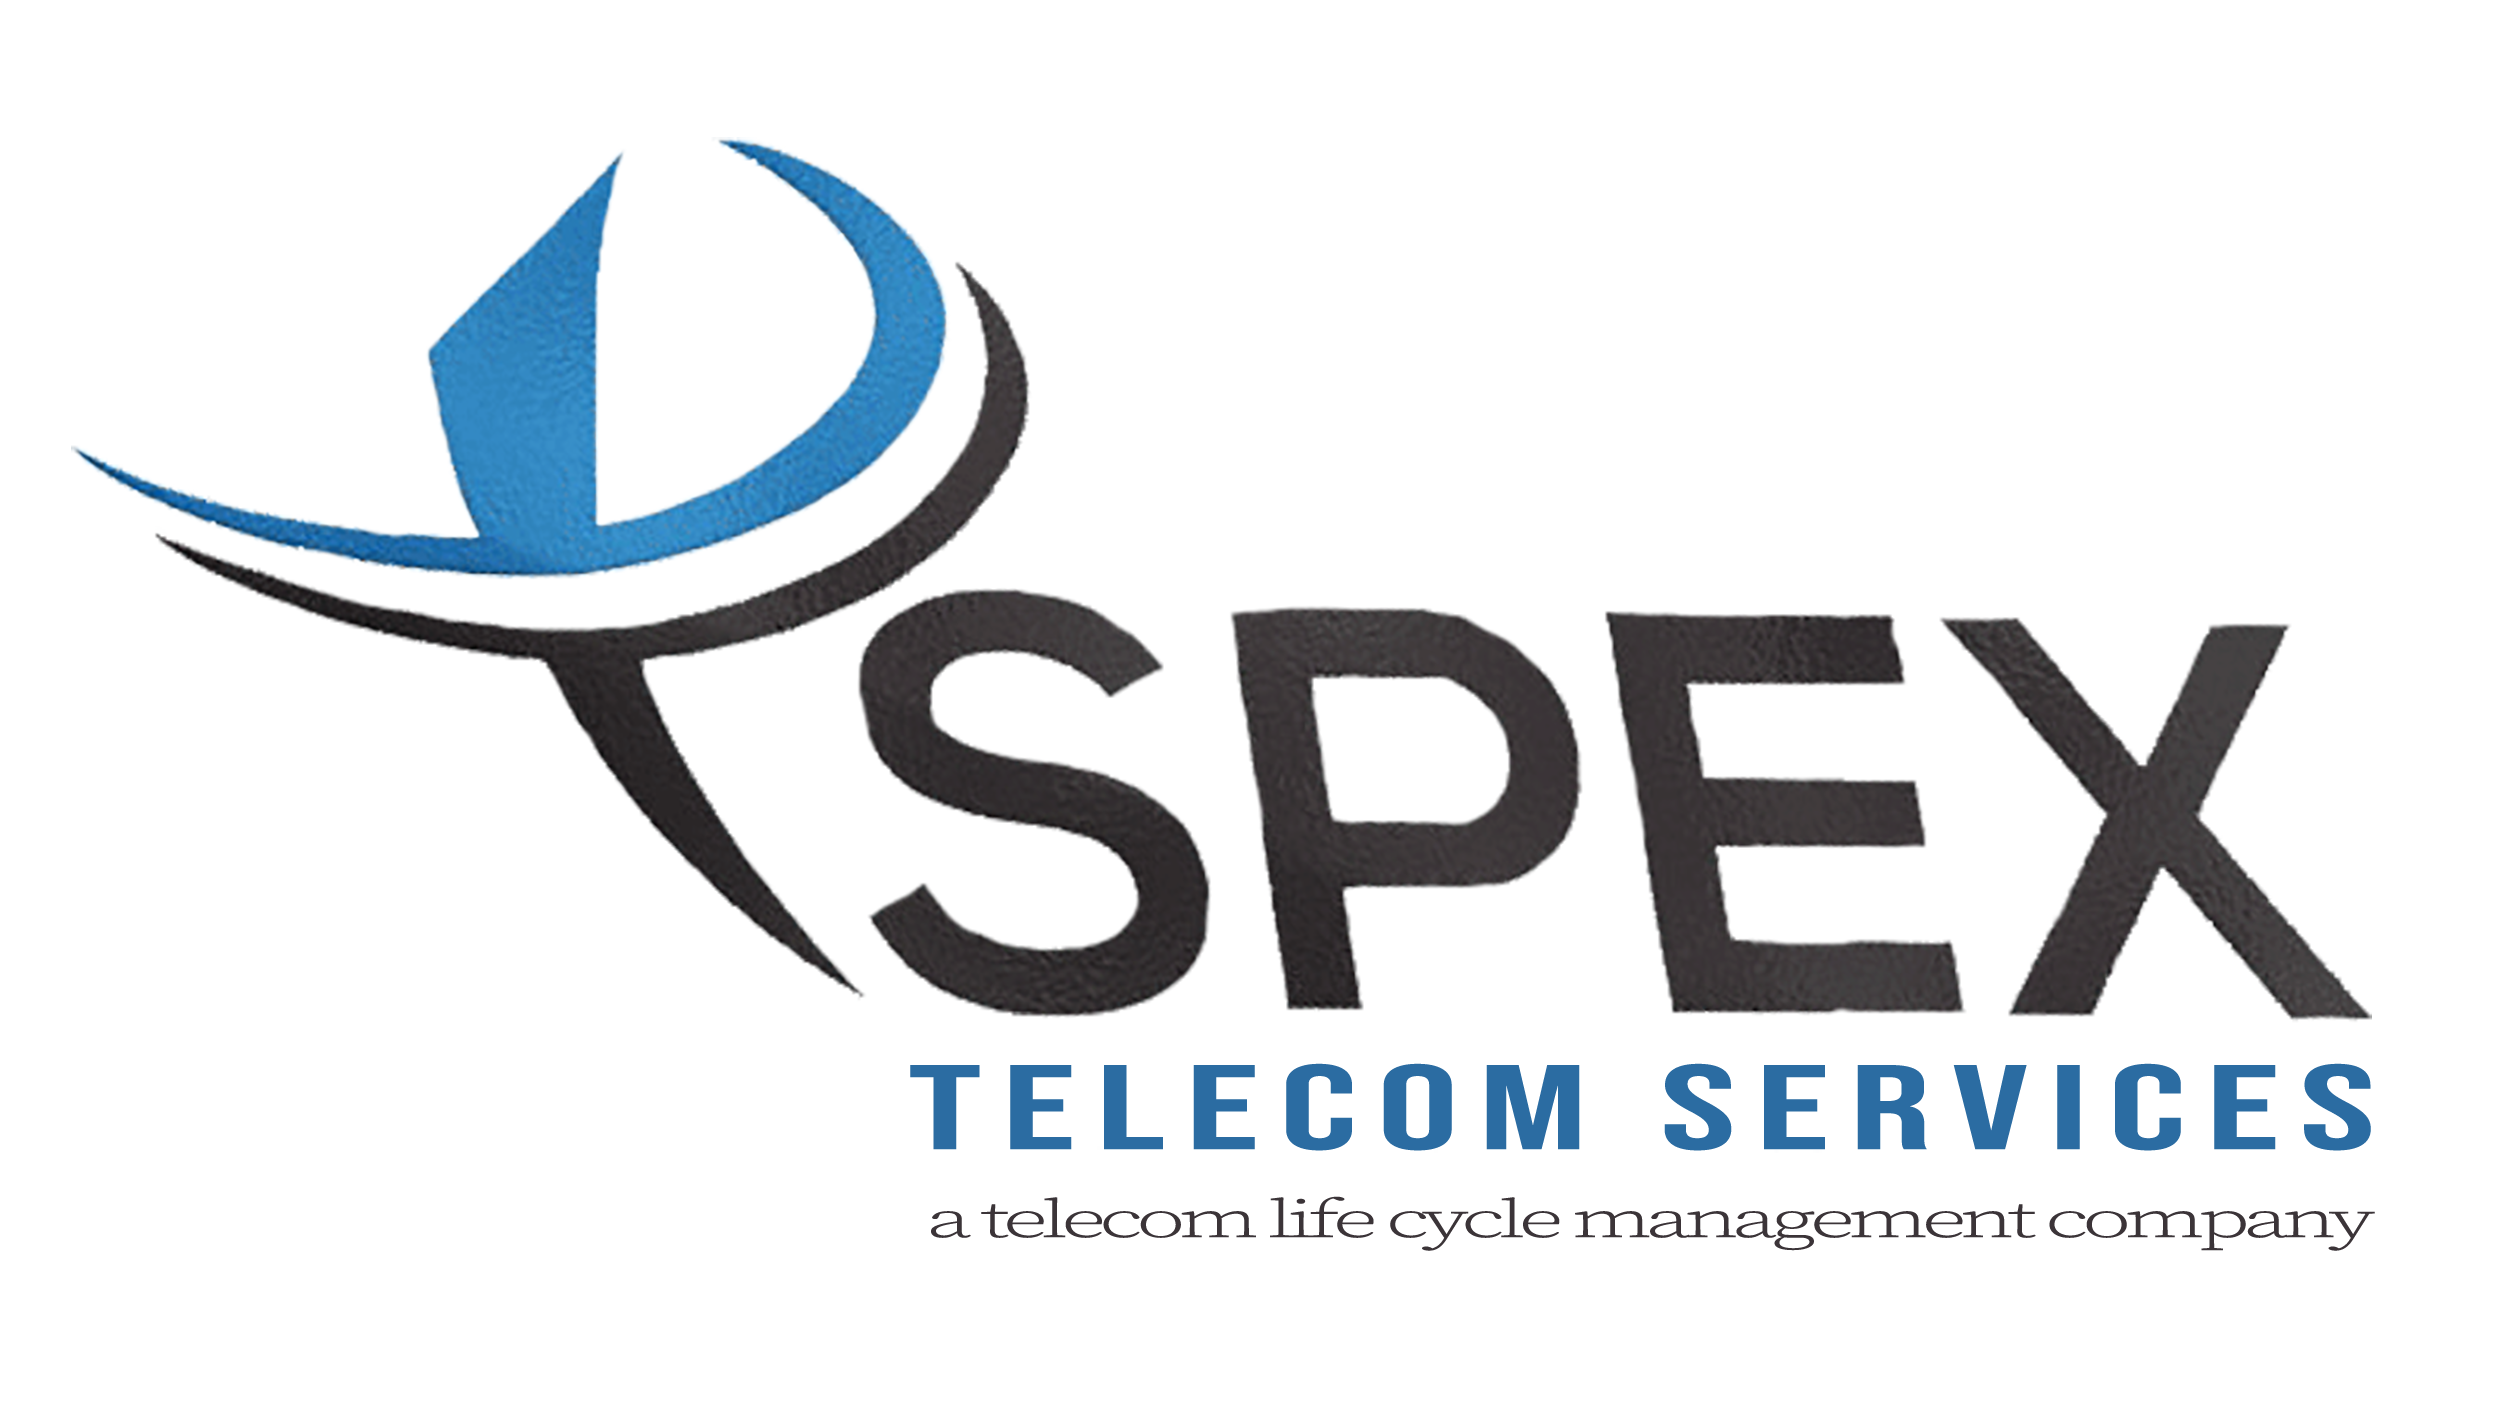 Spex Telecom Services